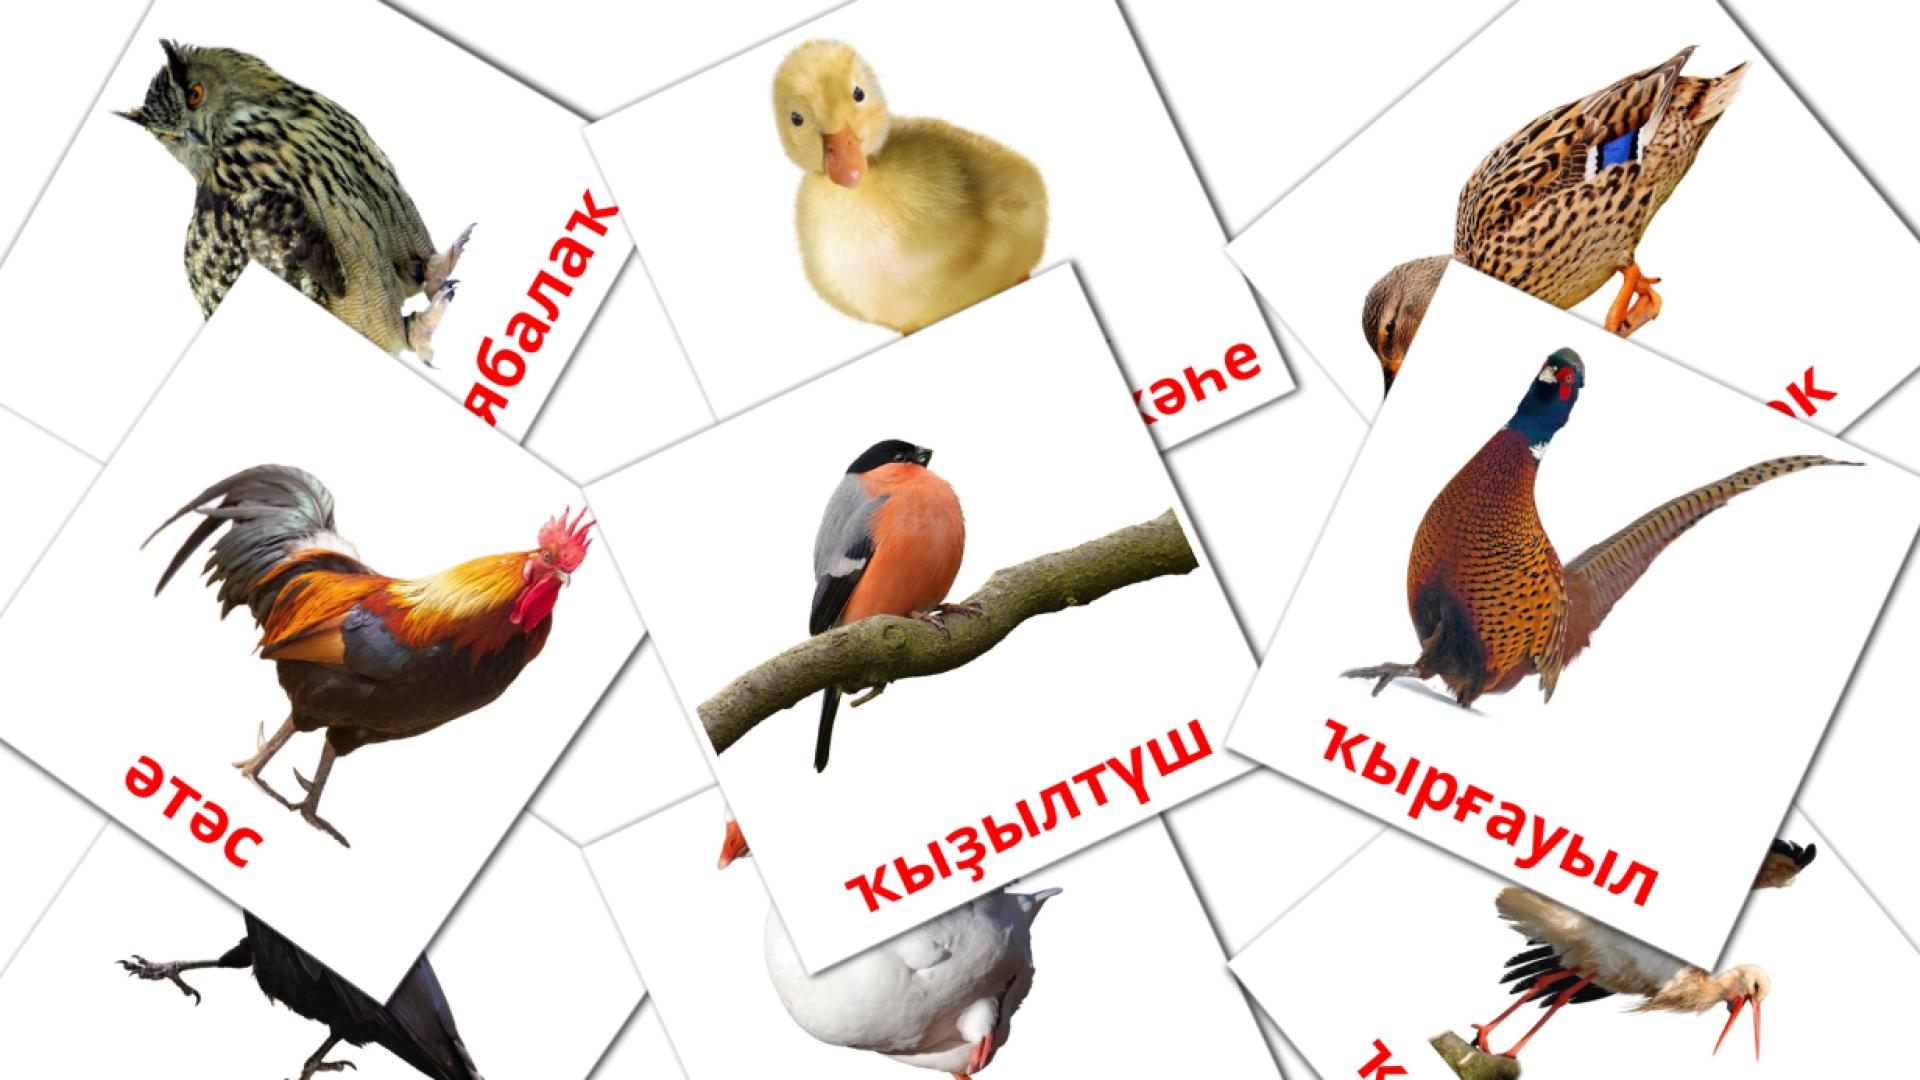 Ҡоштар bashkir woordenschat flashcards